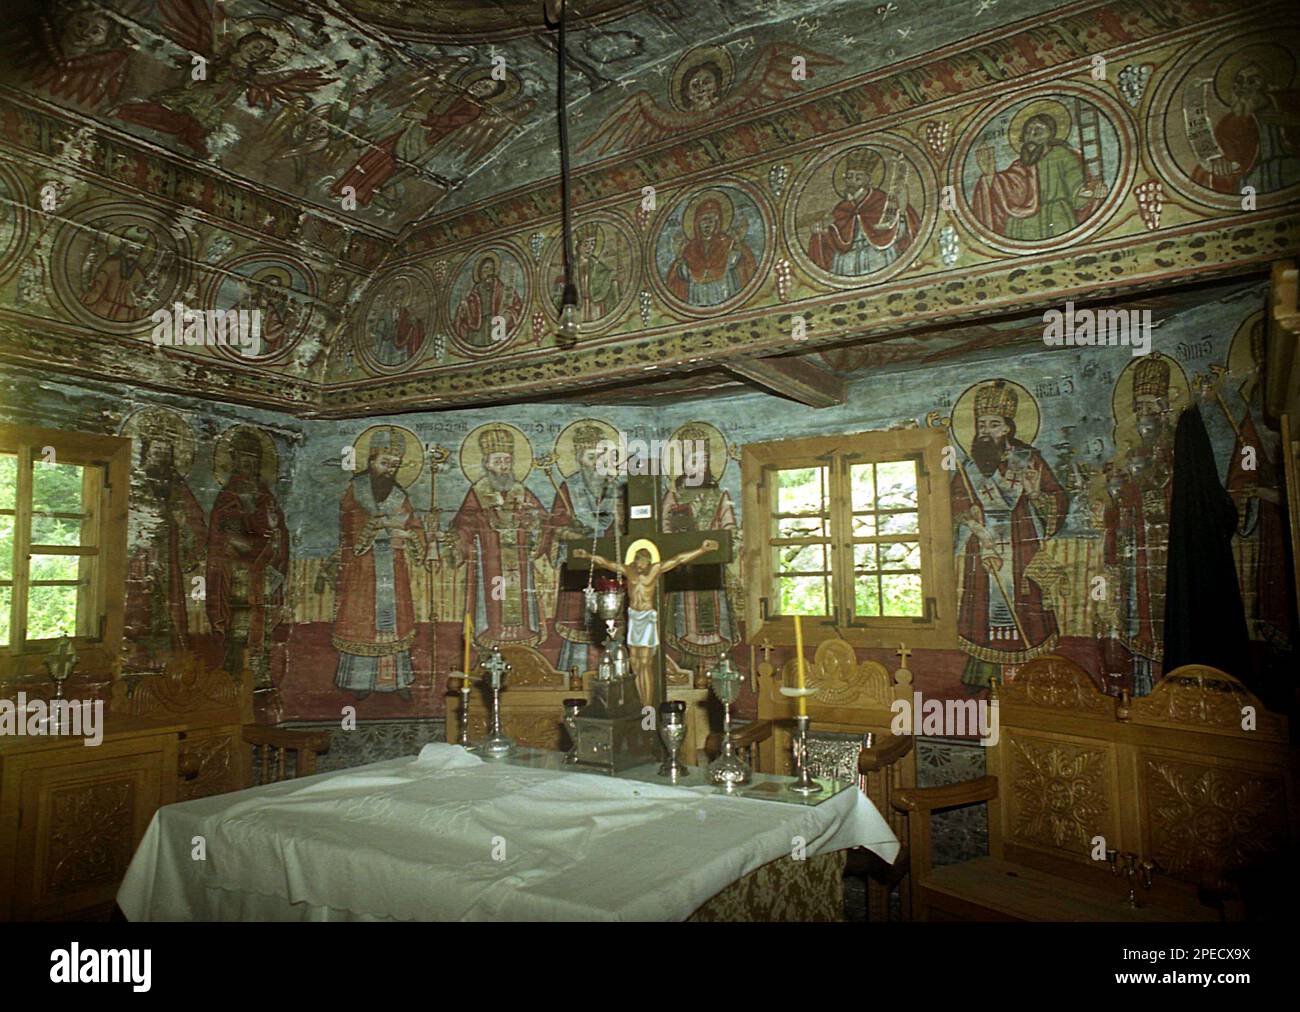 Monasterio Sub Piatra, Condado de Alba, Rumania, 2001. La mesa del altar dentro de la iglesia de madera del siglo 18th. Foto de stock